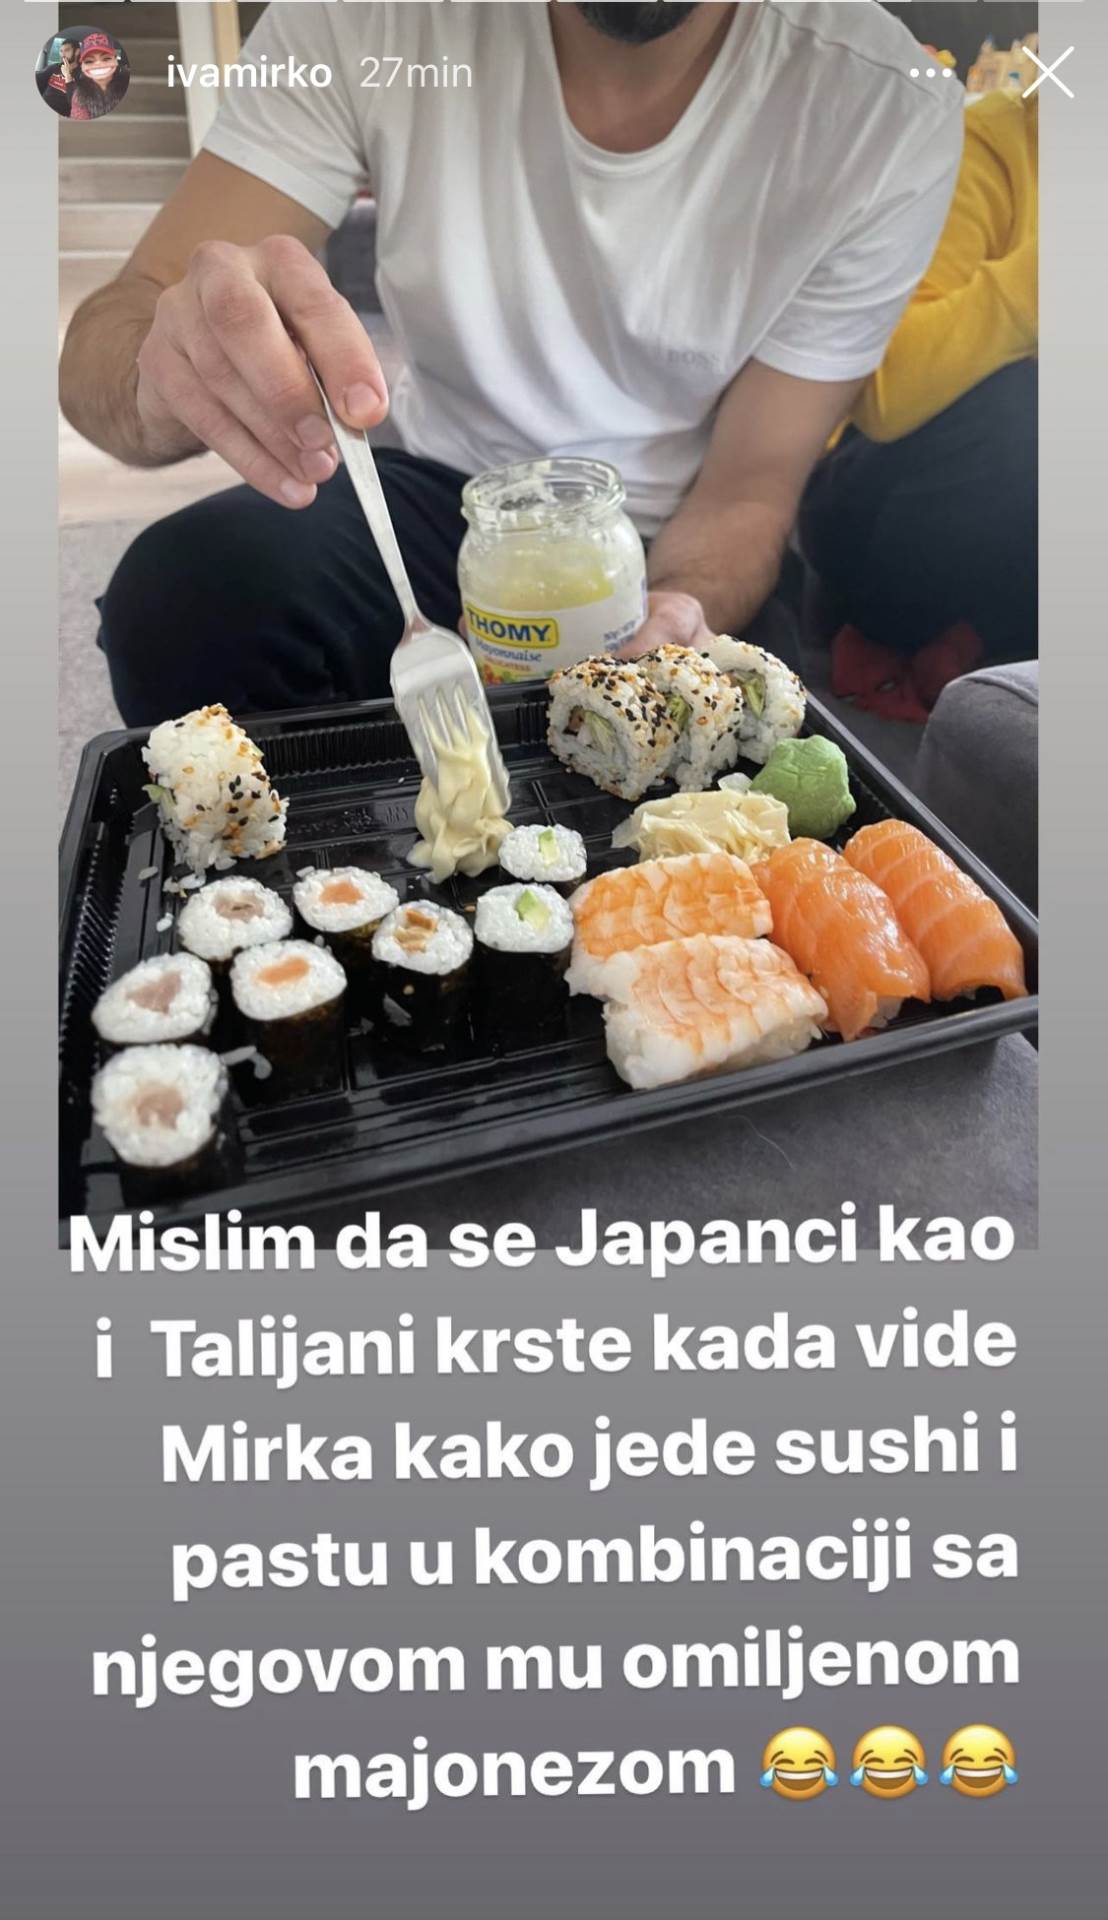 MA JE LI MOGUĆE? Iva Alilović pokazala kako Mirko jede sushi